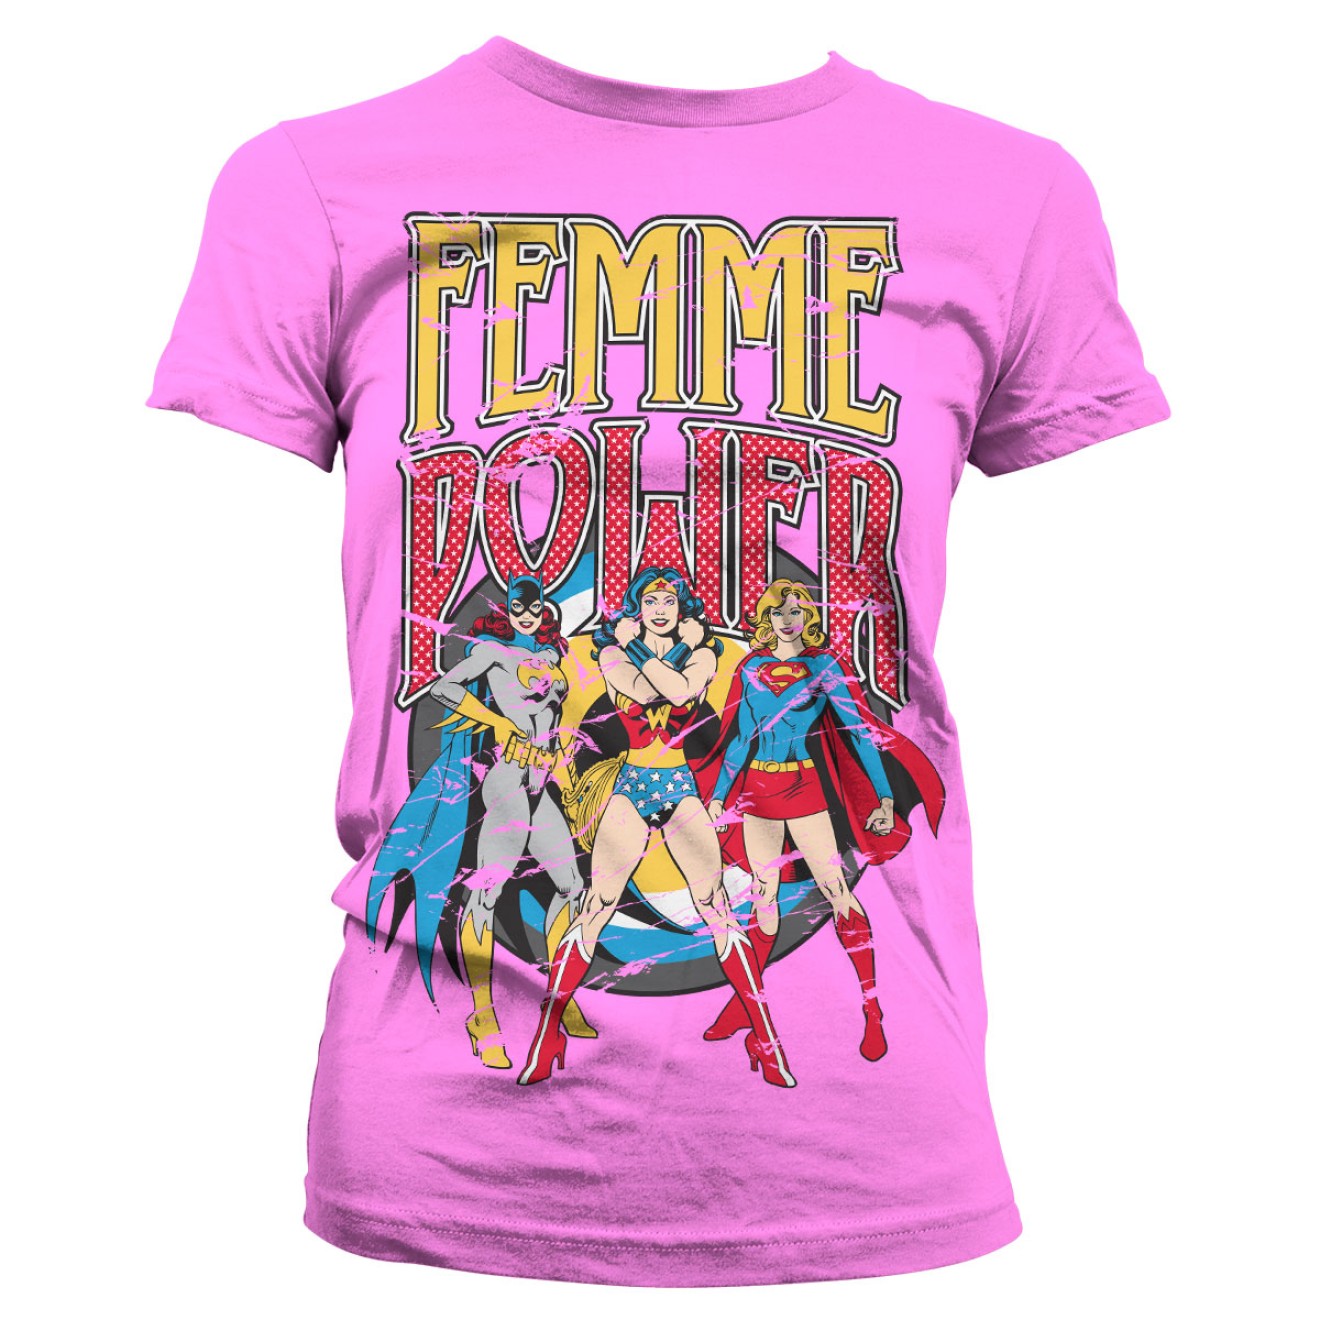 DC Comics - Wonder Woman Femme Power Girly T-Shirt